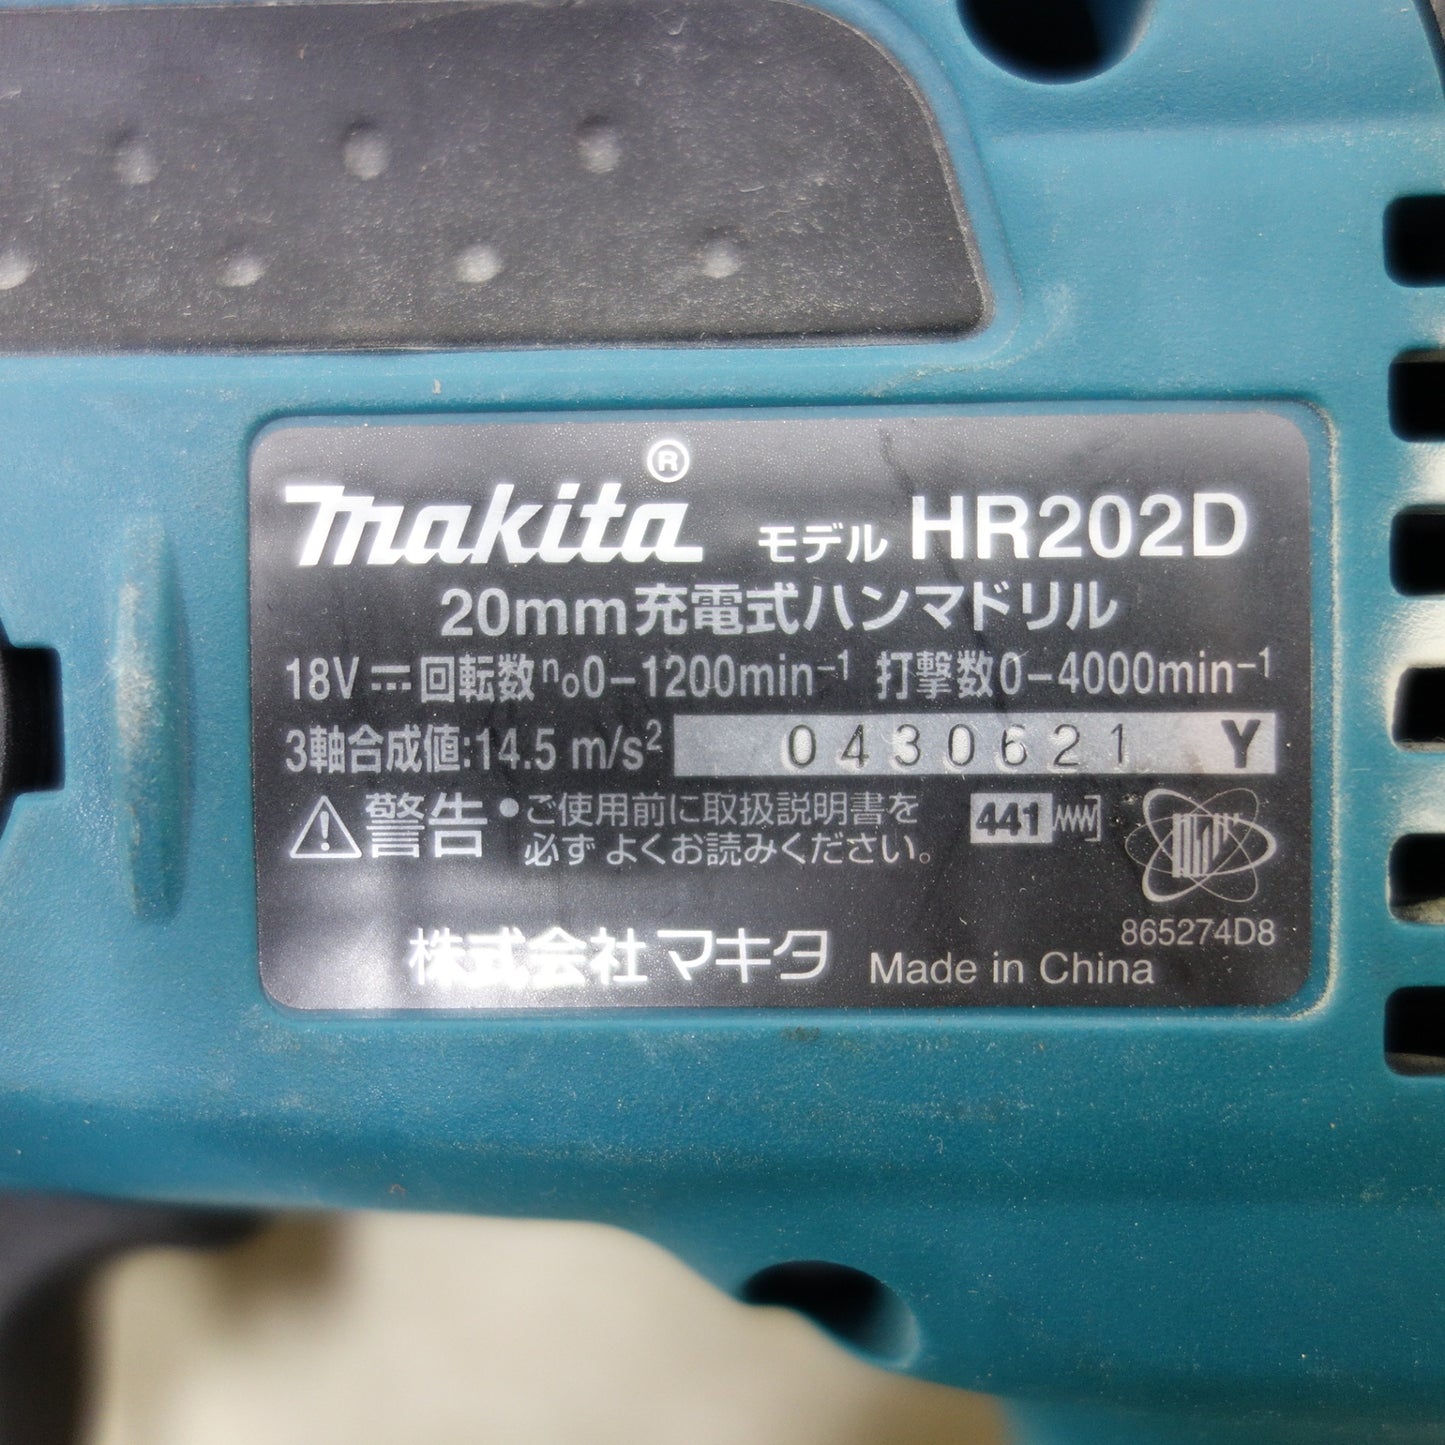 [送料無料] ◆makita マキタ 20mm 充電式ハンマドリル HR202D 18V 電動工具 本体のみ◆